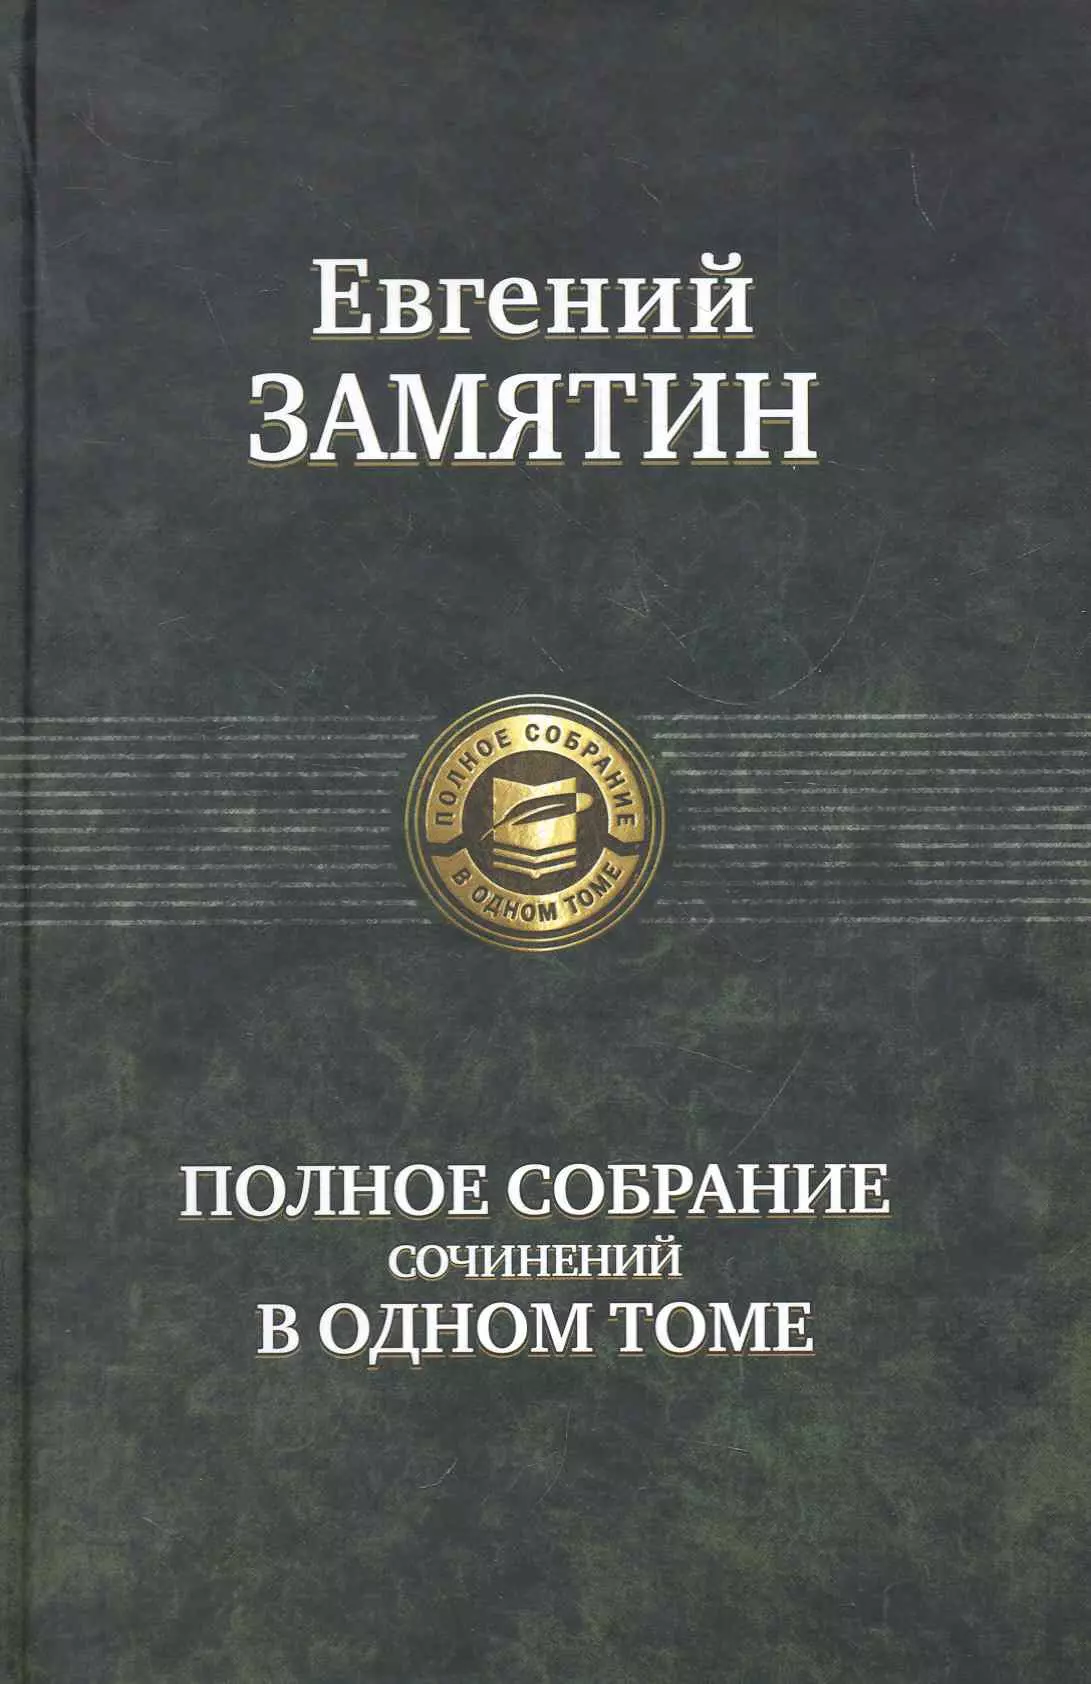 Замятин Евгений Иванович - Полное собрание сочинений в одном томе.